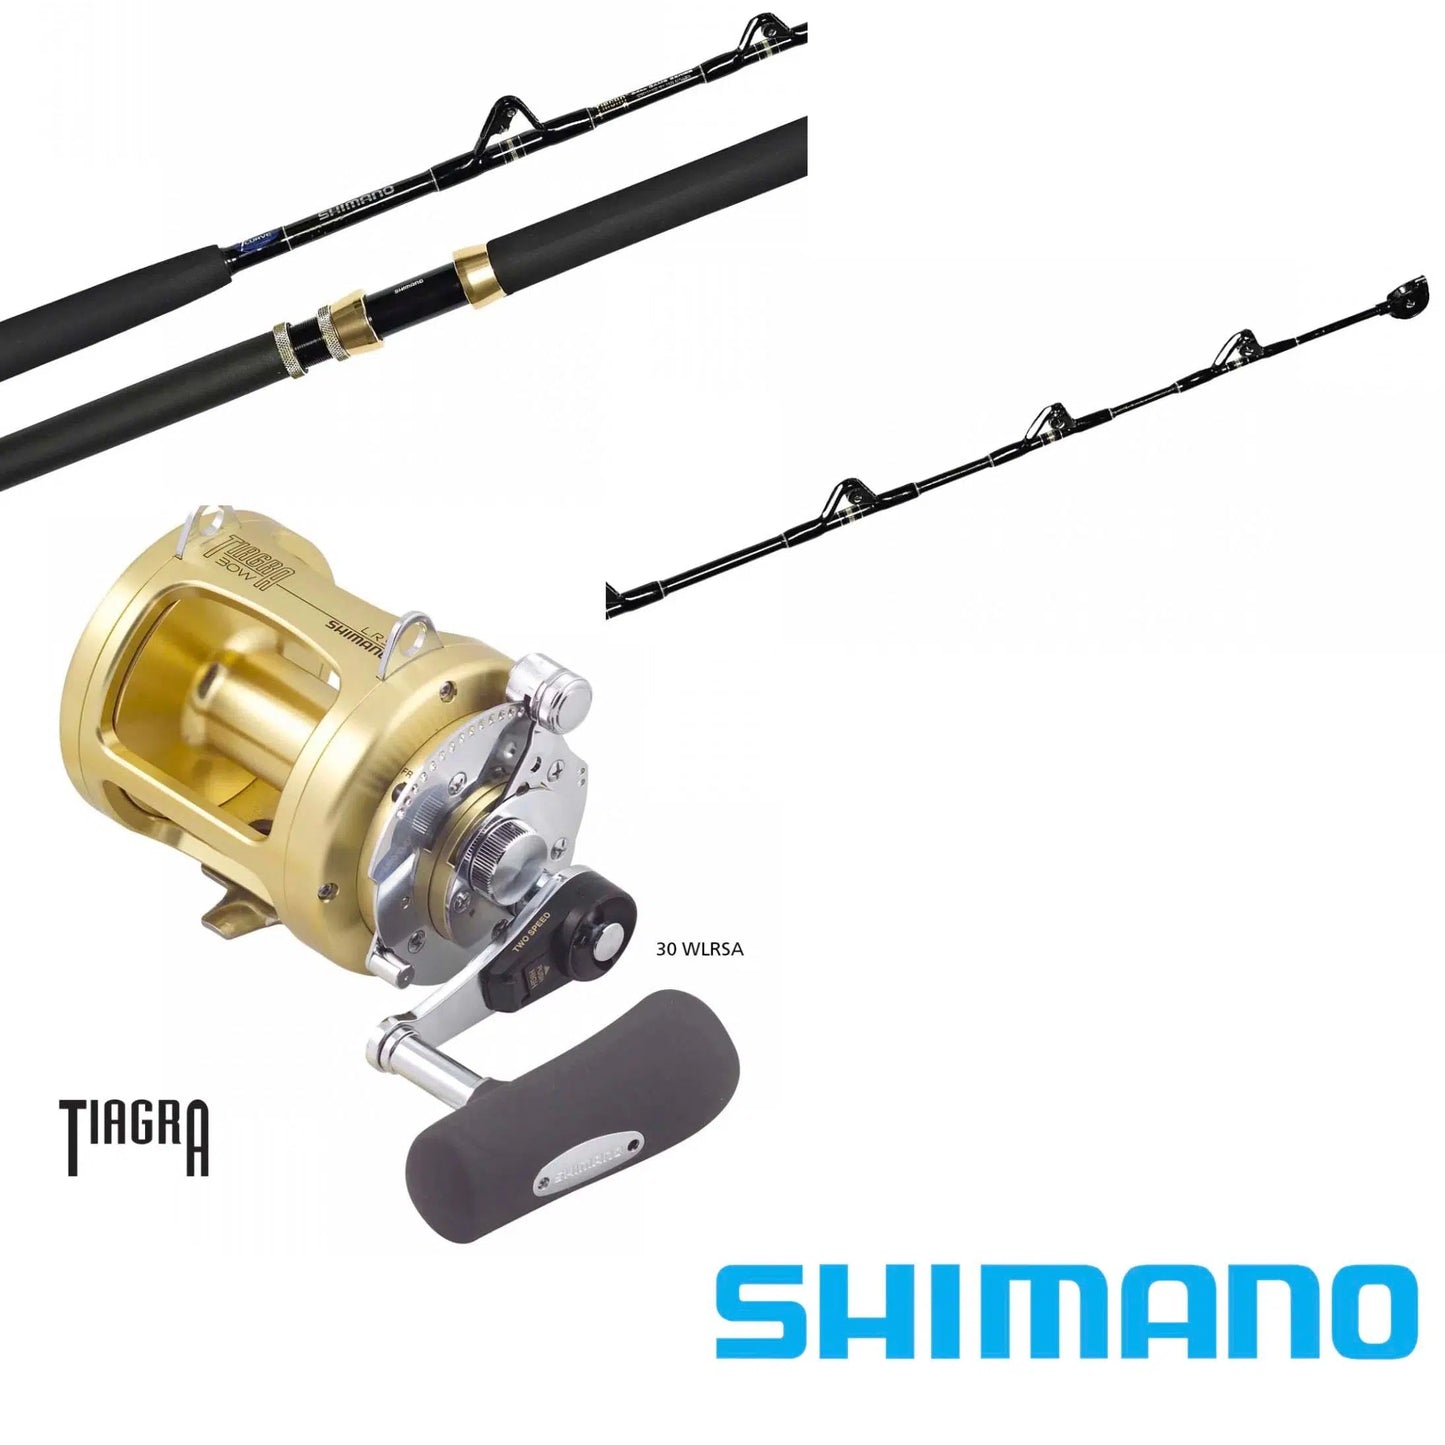 Shimano Tiagra Game Combo – Fishing Station